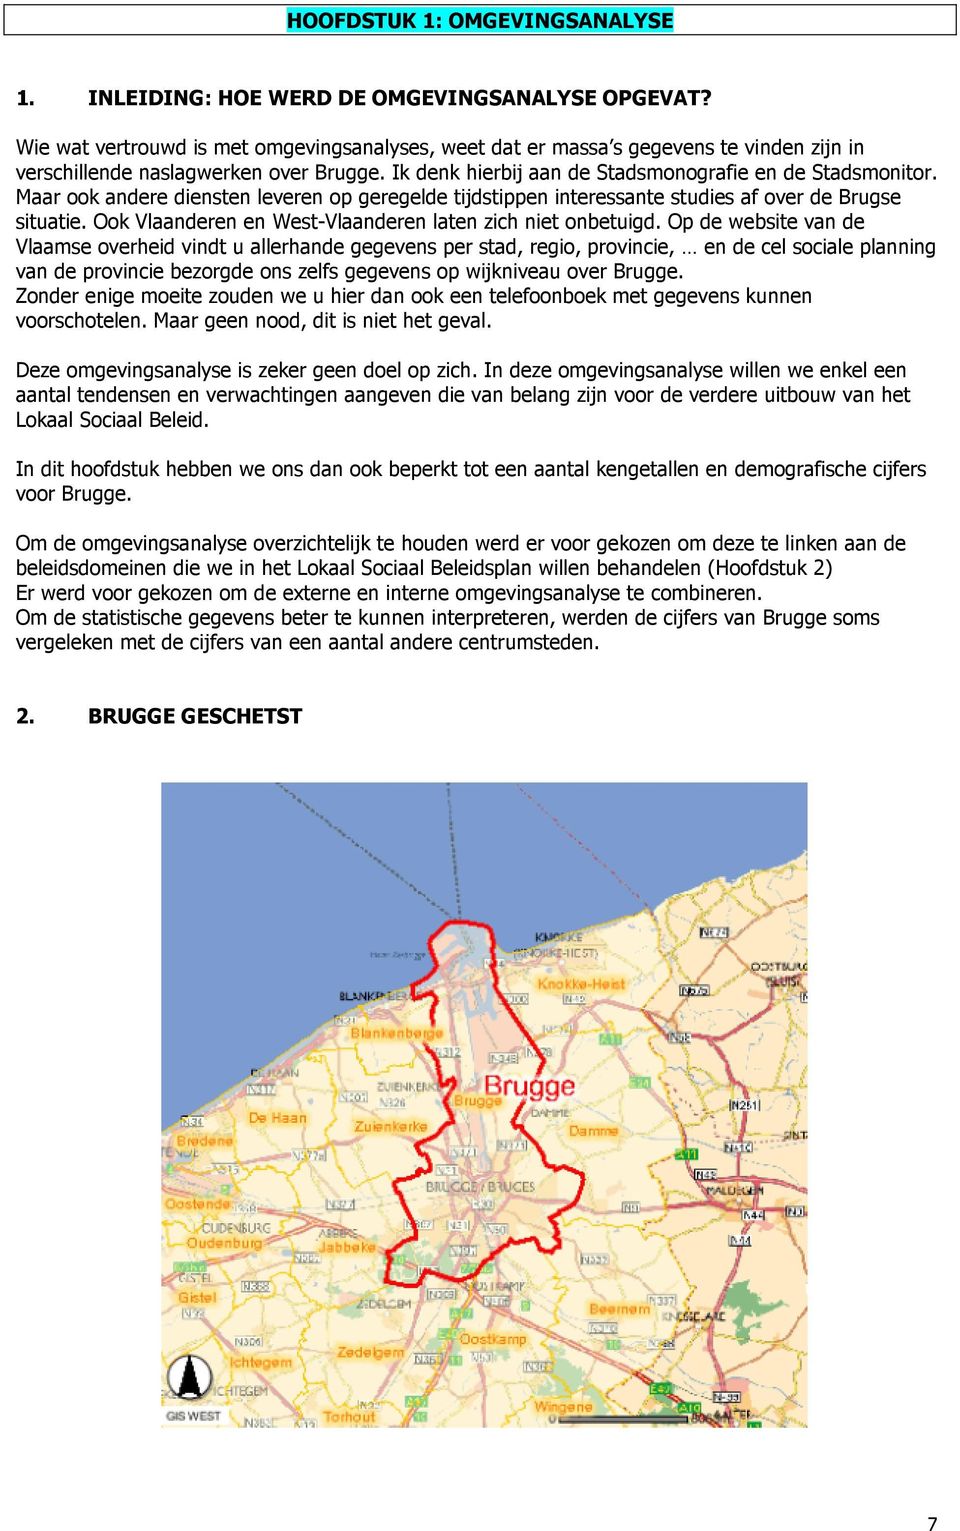 Maar ook andere diensten leveren op geregelde tijdstippen interessante studies af over de Brugse situatie. Ook Vlaanderen en West-Vlaanderen laten zich niet onbetuigd.